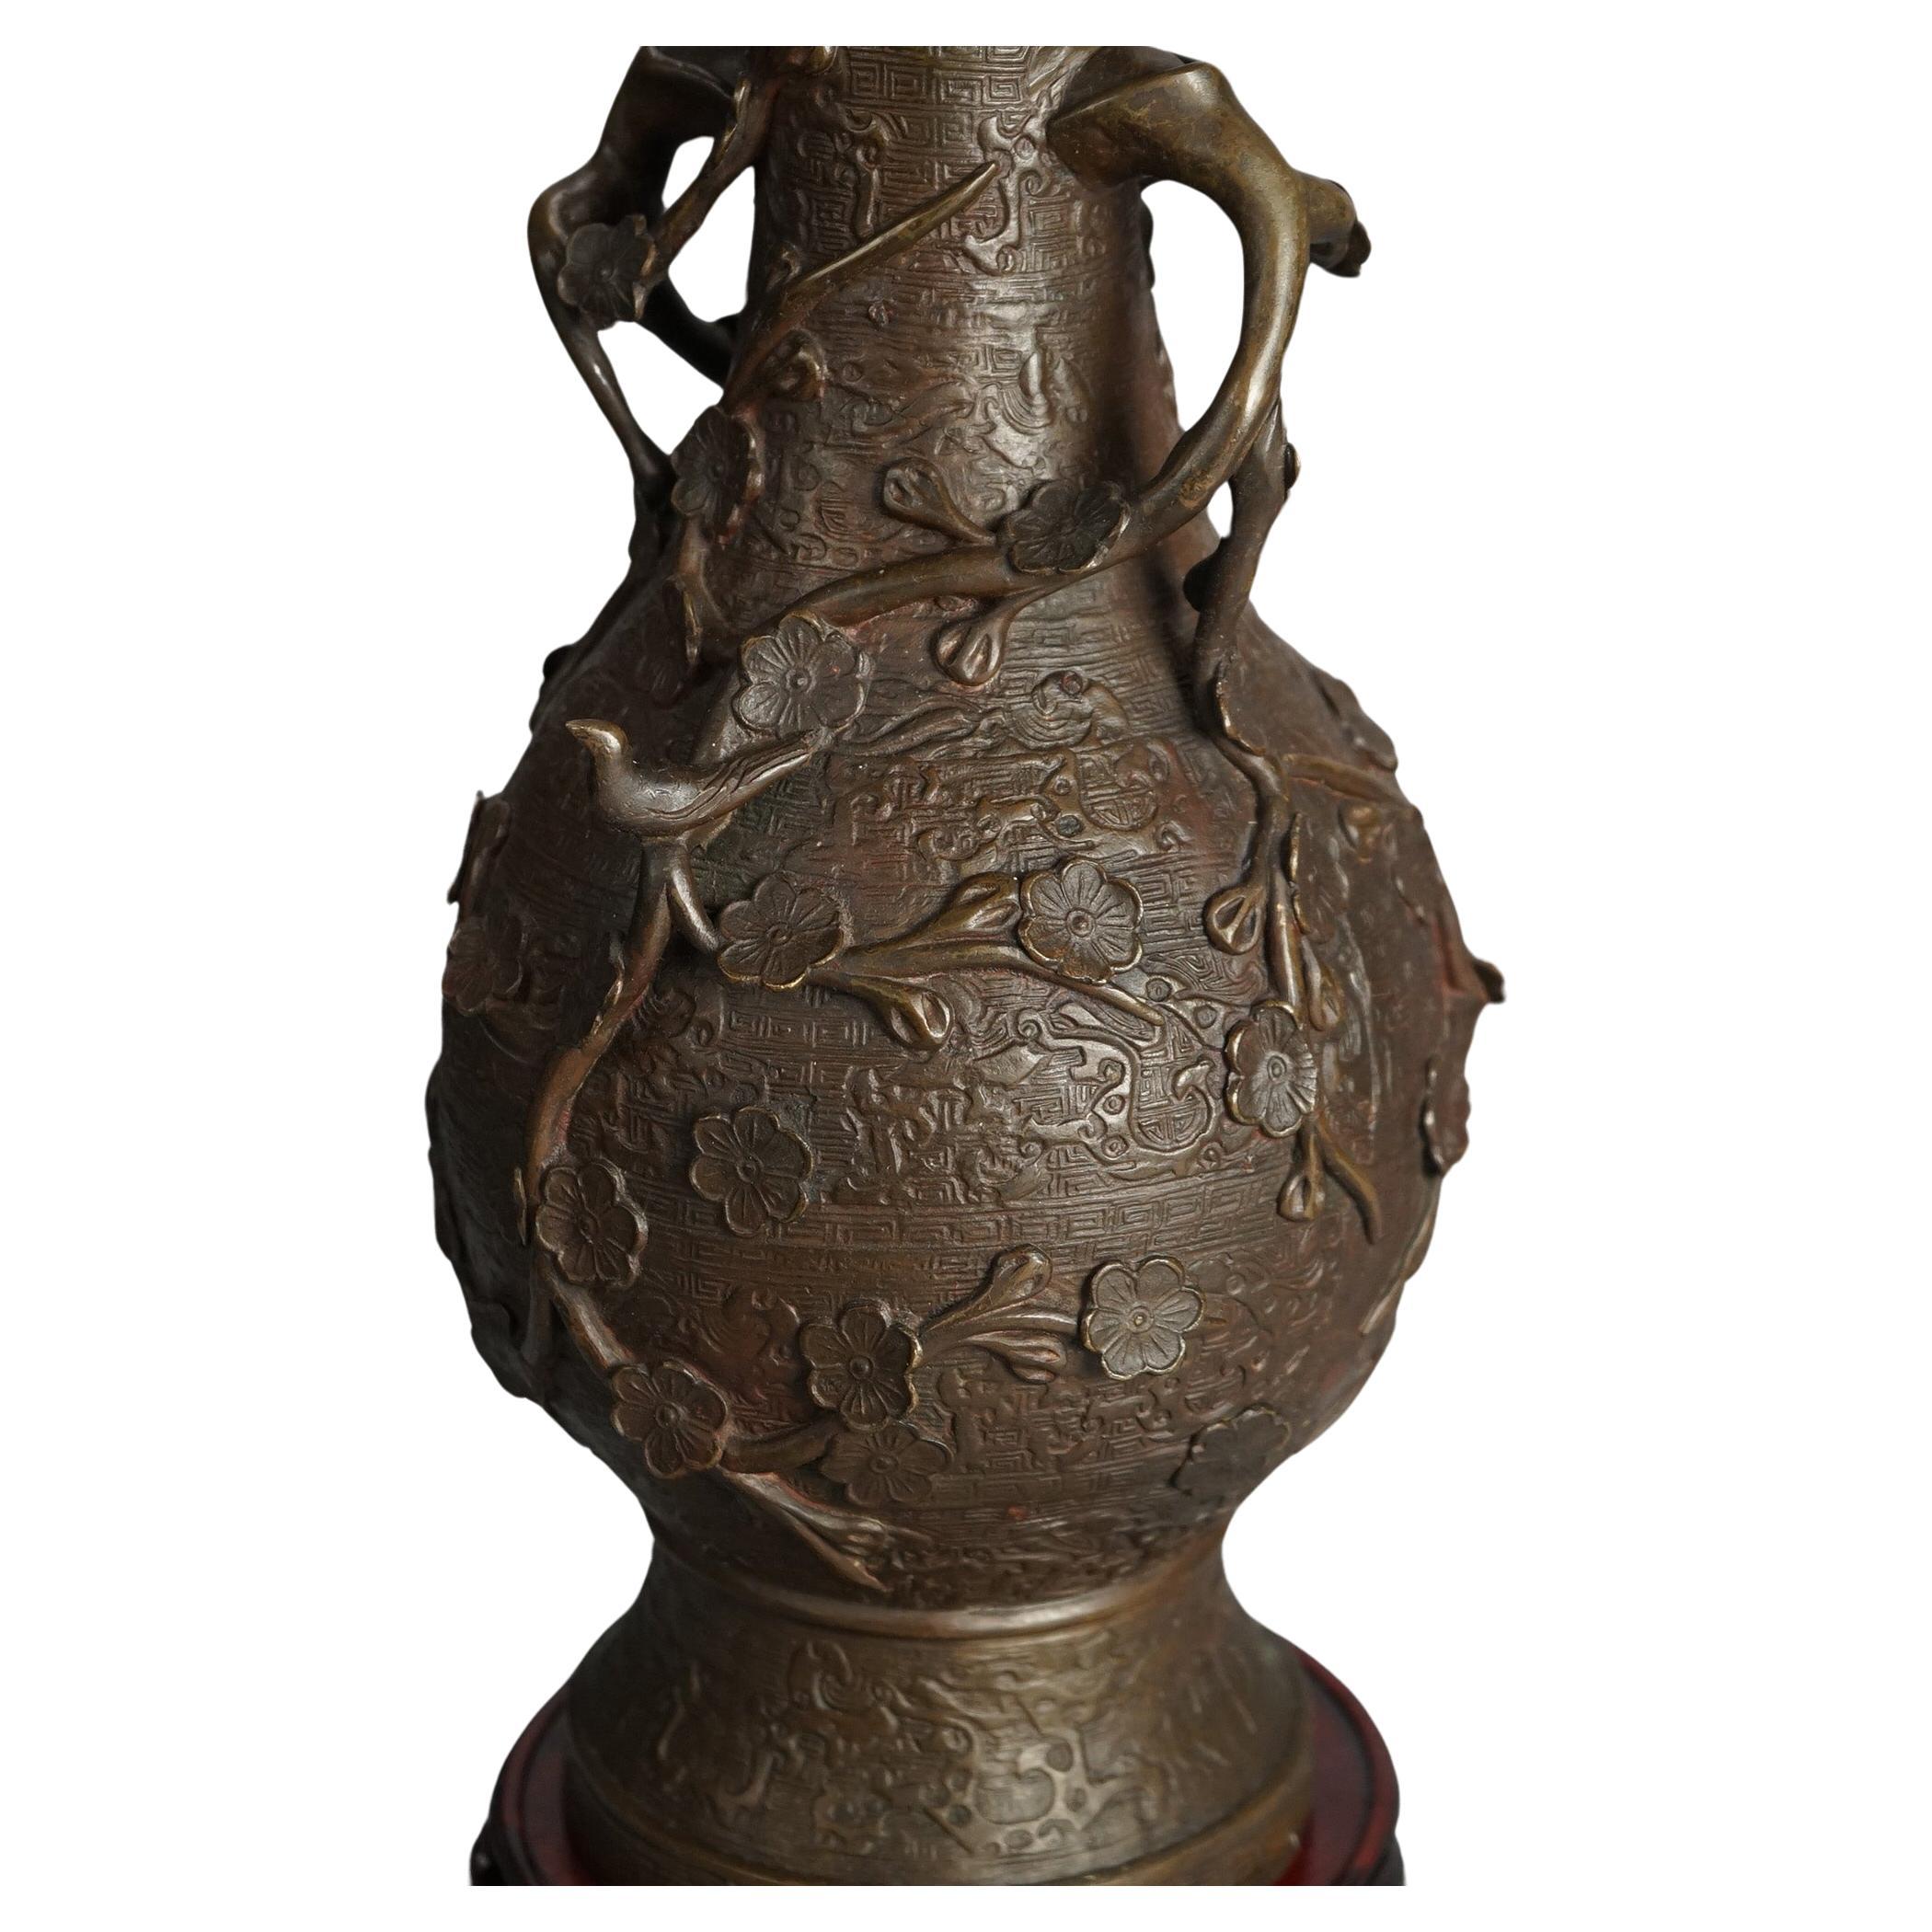 Antike chinesische Bronzevase mit floralen Elementen & Branch Form Griffe auf Holzständer C1890

Maße: 18''H x 6,75''B x 6,75''T